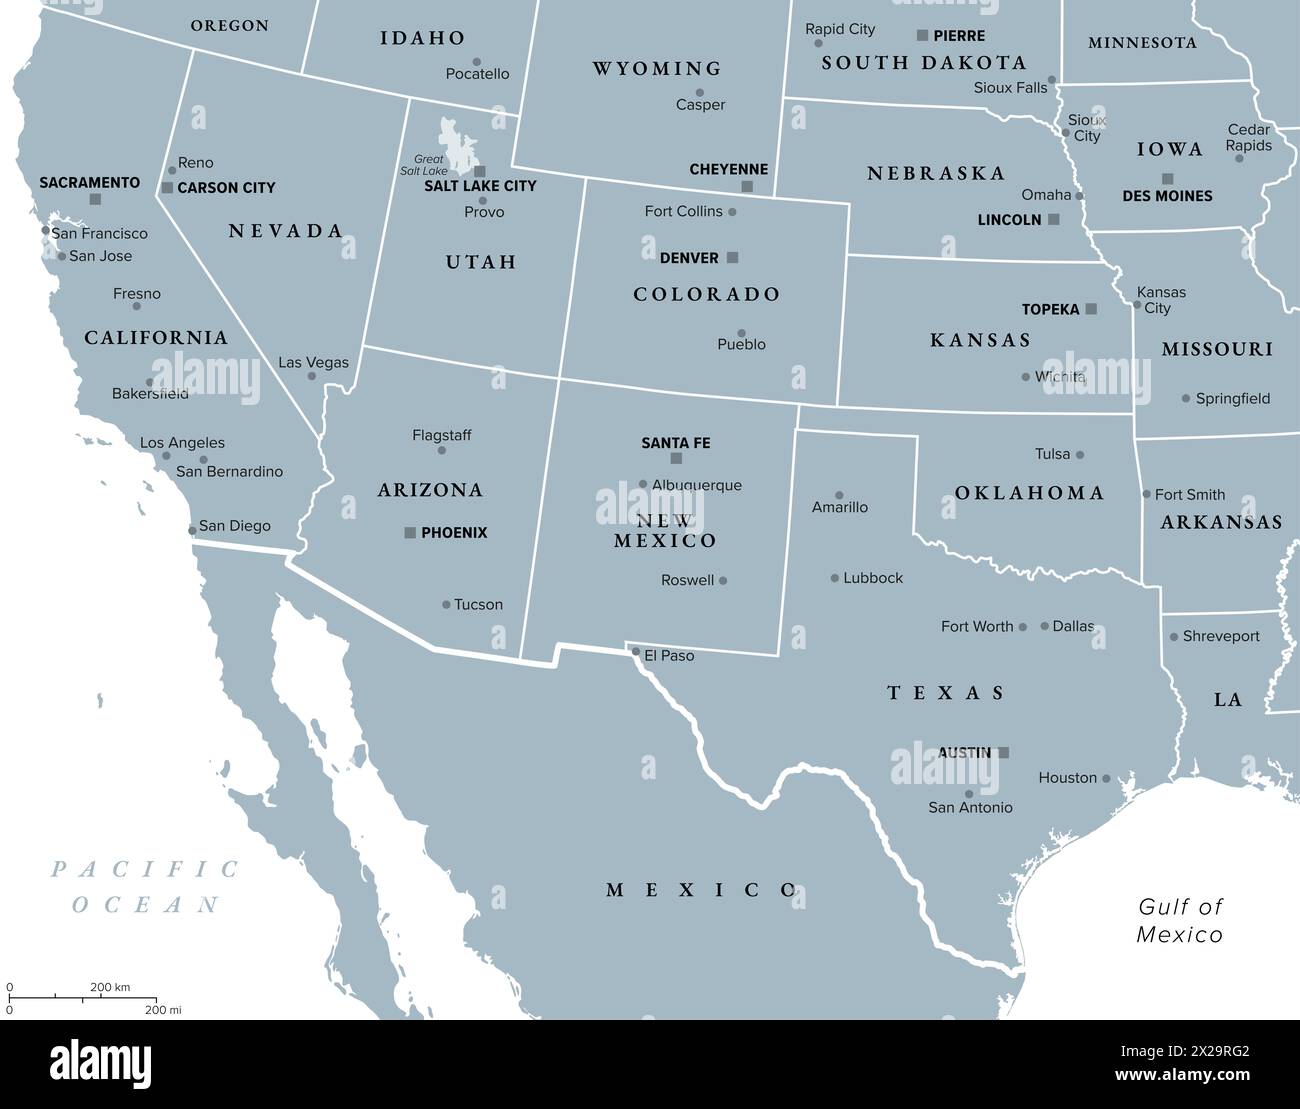 Südwestliche Region der Vereinigten Staaten, graue politische Karte. Staaten des amerikanischen Südwestens, einfach Südwesten. Geografische und kulturelle Region. Stockfoto